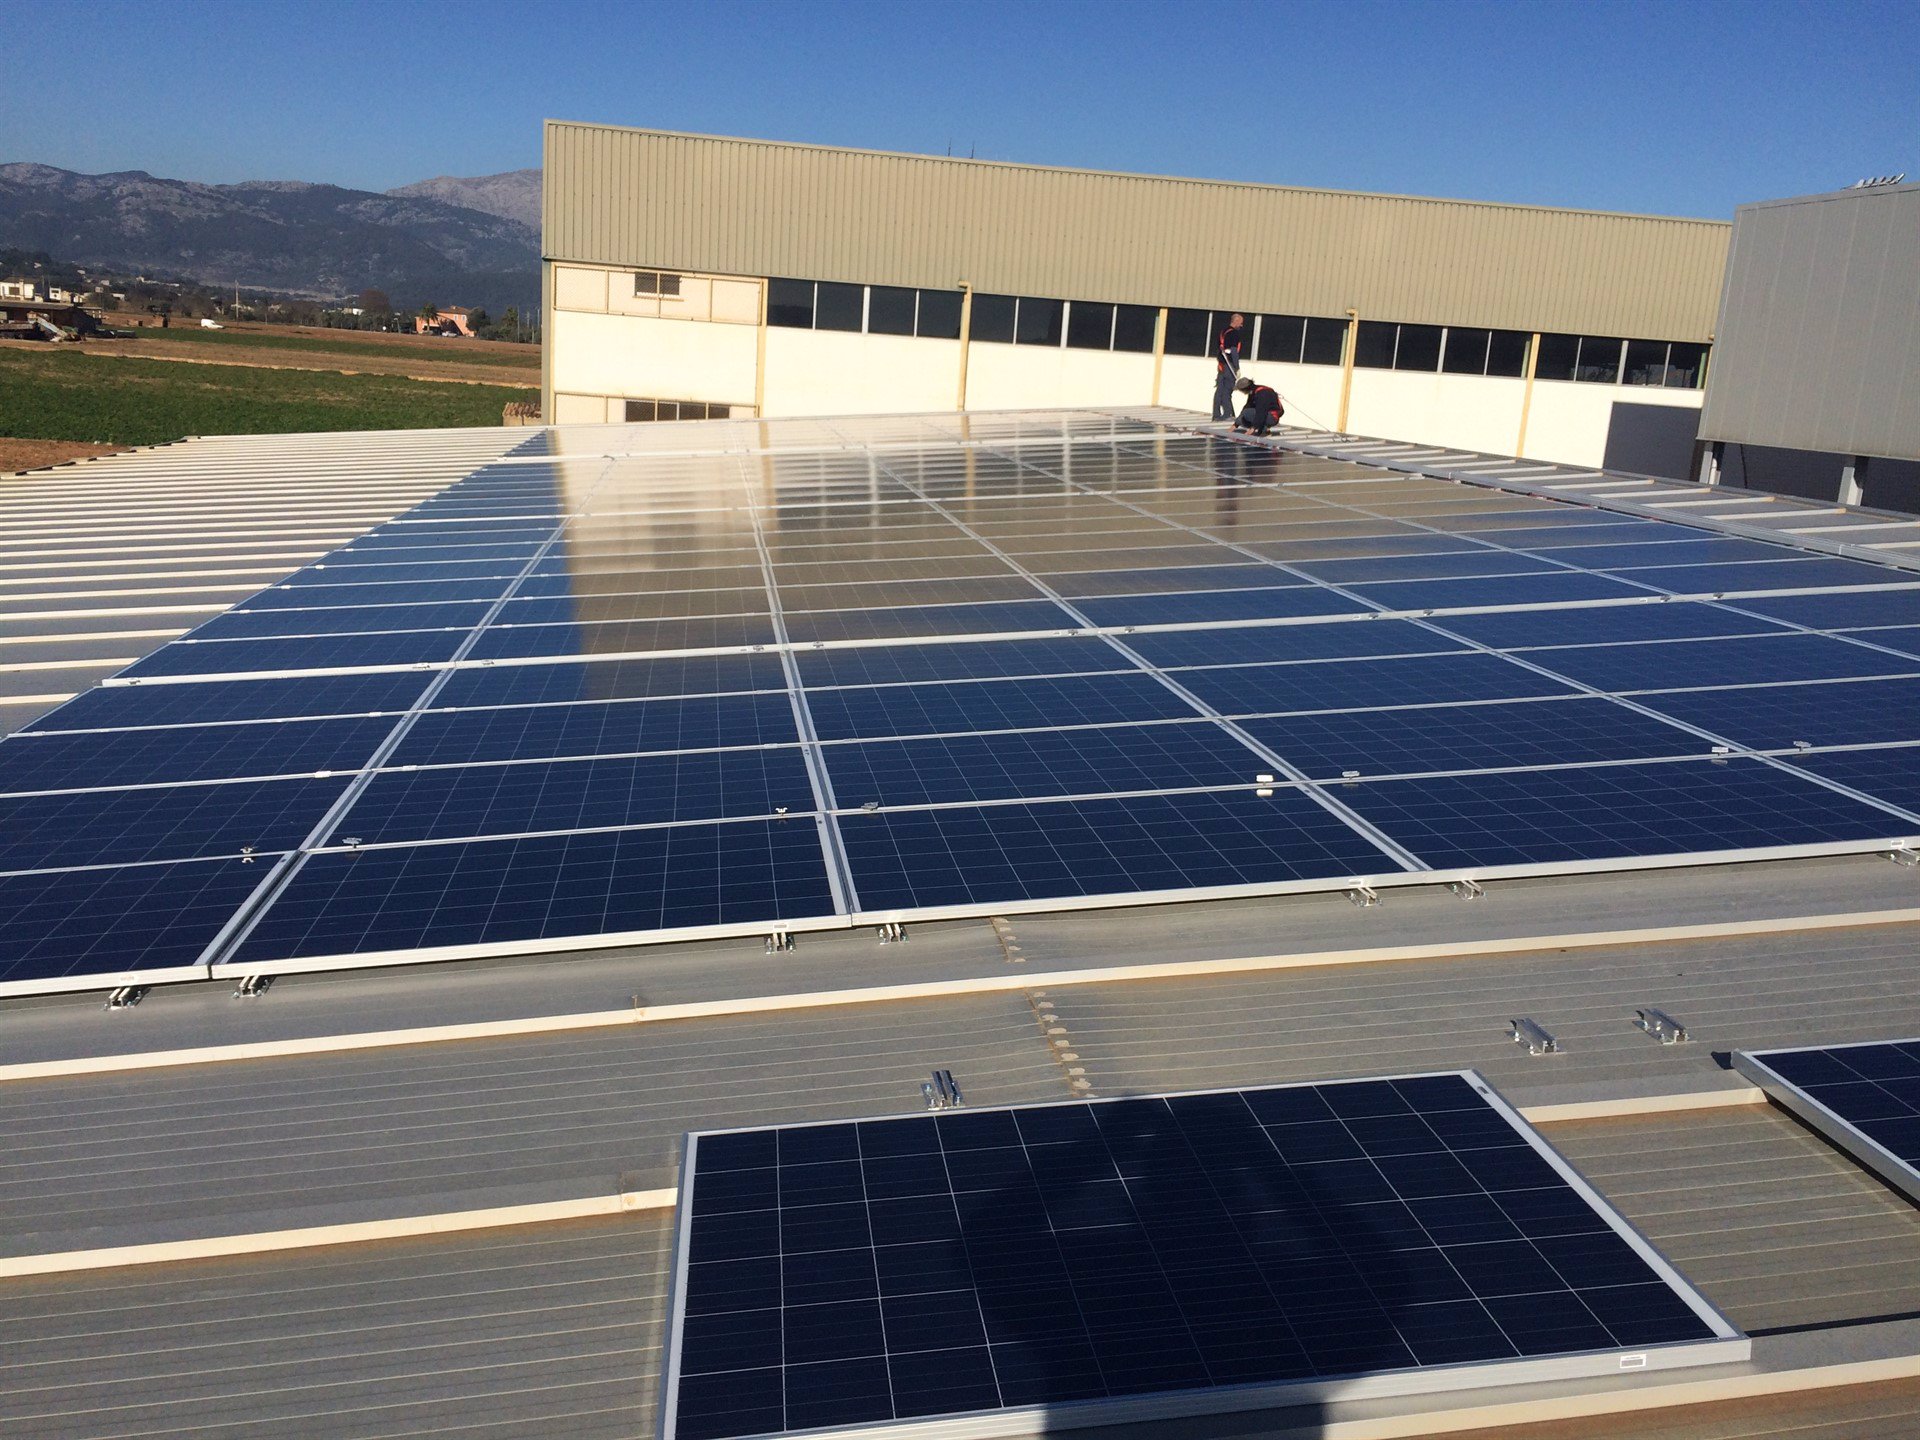 Sa Pobla instala placas solares fotovoltaicas en la cubierta de su piscina municipal